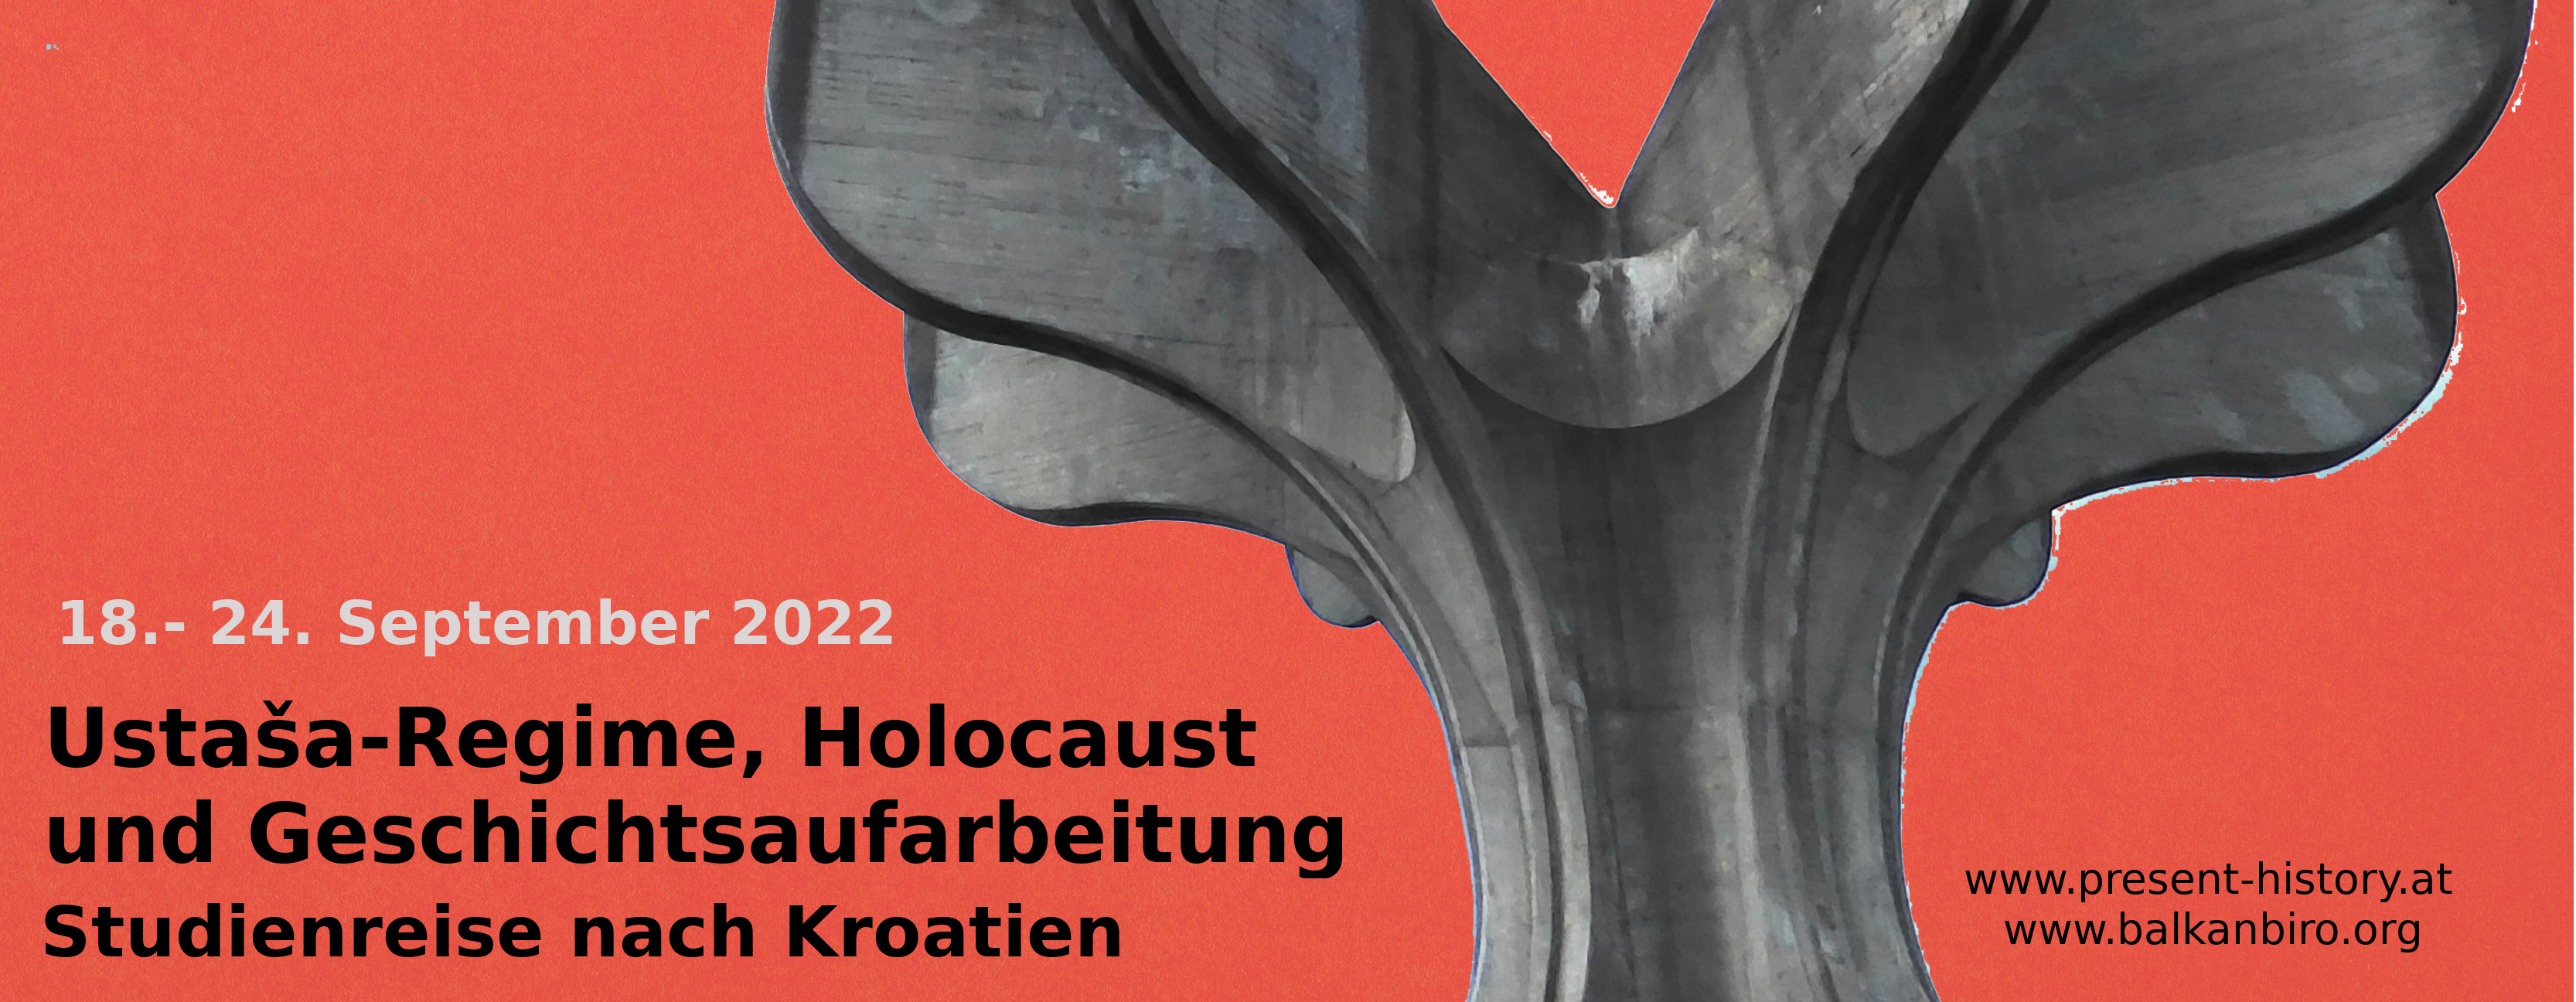 Ustaša-Regime, Holocaust und Geschichtsaufarbeitung, Studienreise nach Kroatien, 18.-24. September 2022